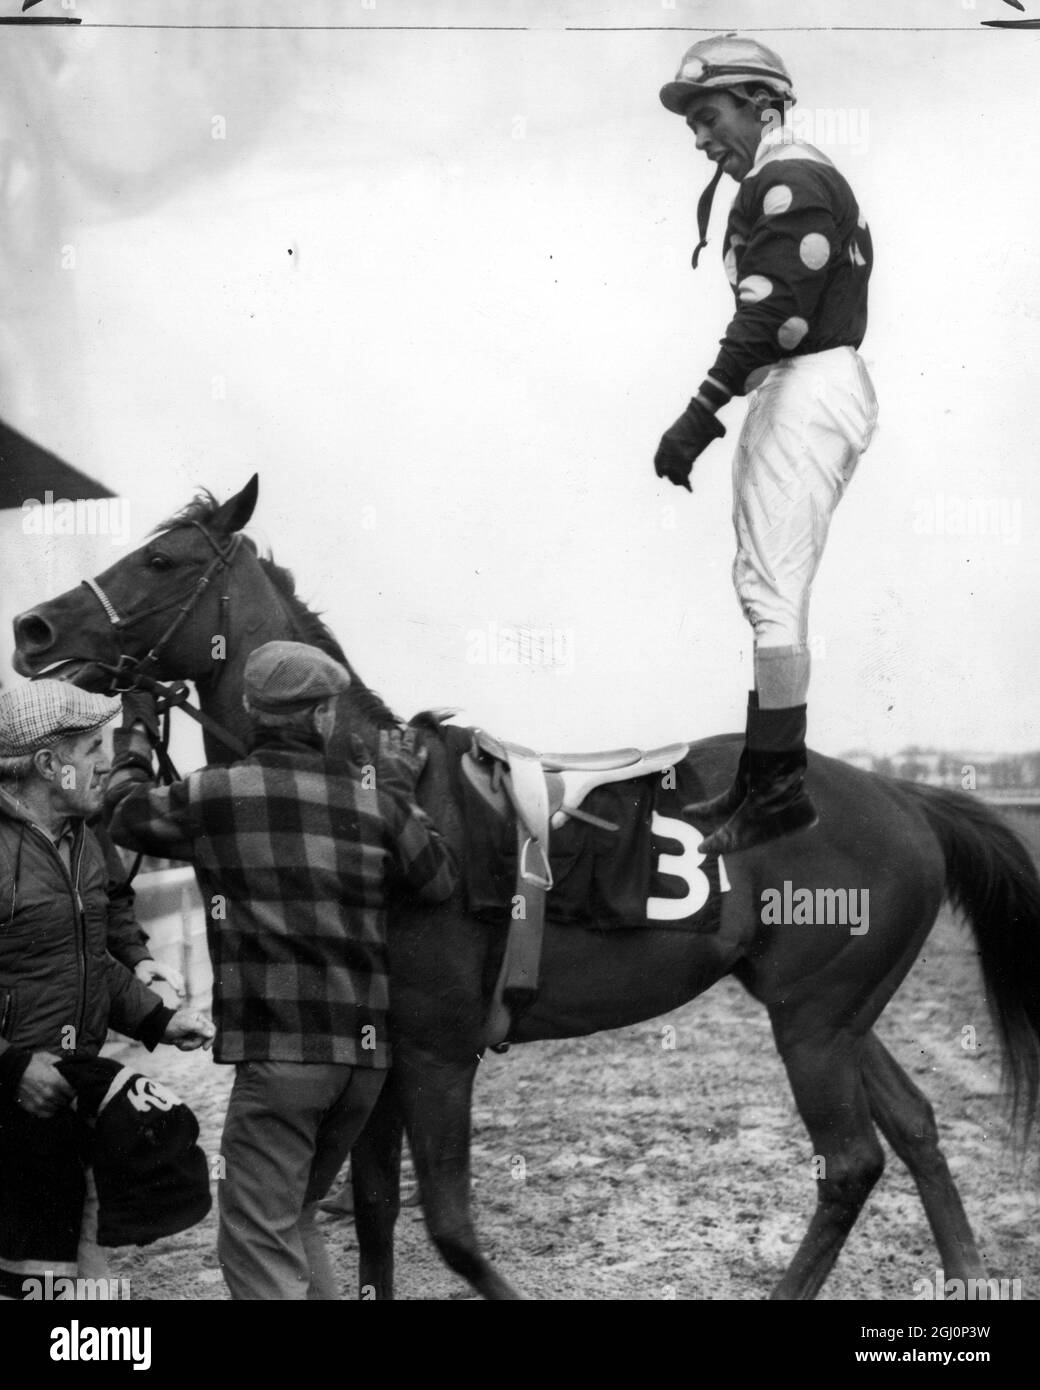 Con il suo cavallo sullo sfondo , Jockey Angel Cordero a mezz'aria mentre salta per festeggiare la vittoria di una gara Foto Stock